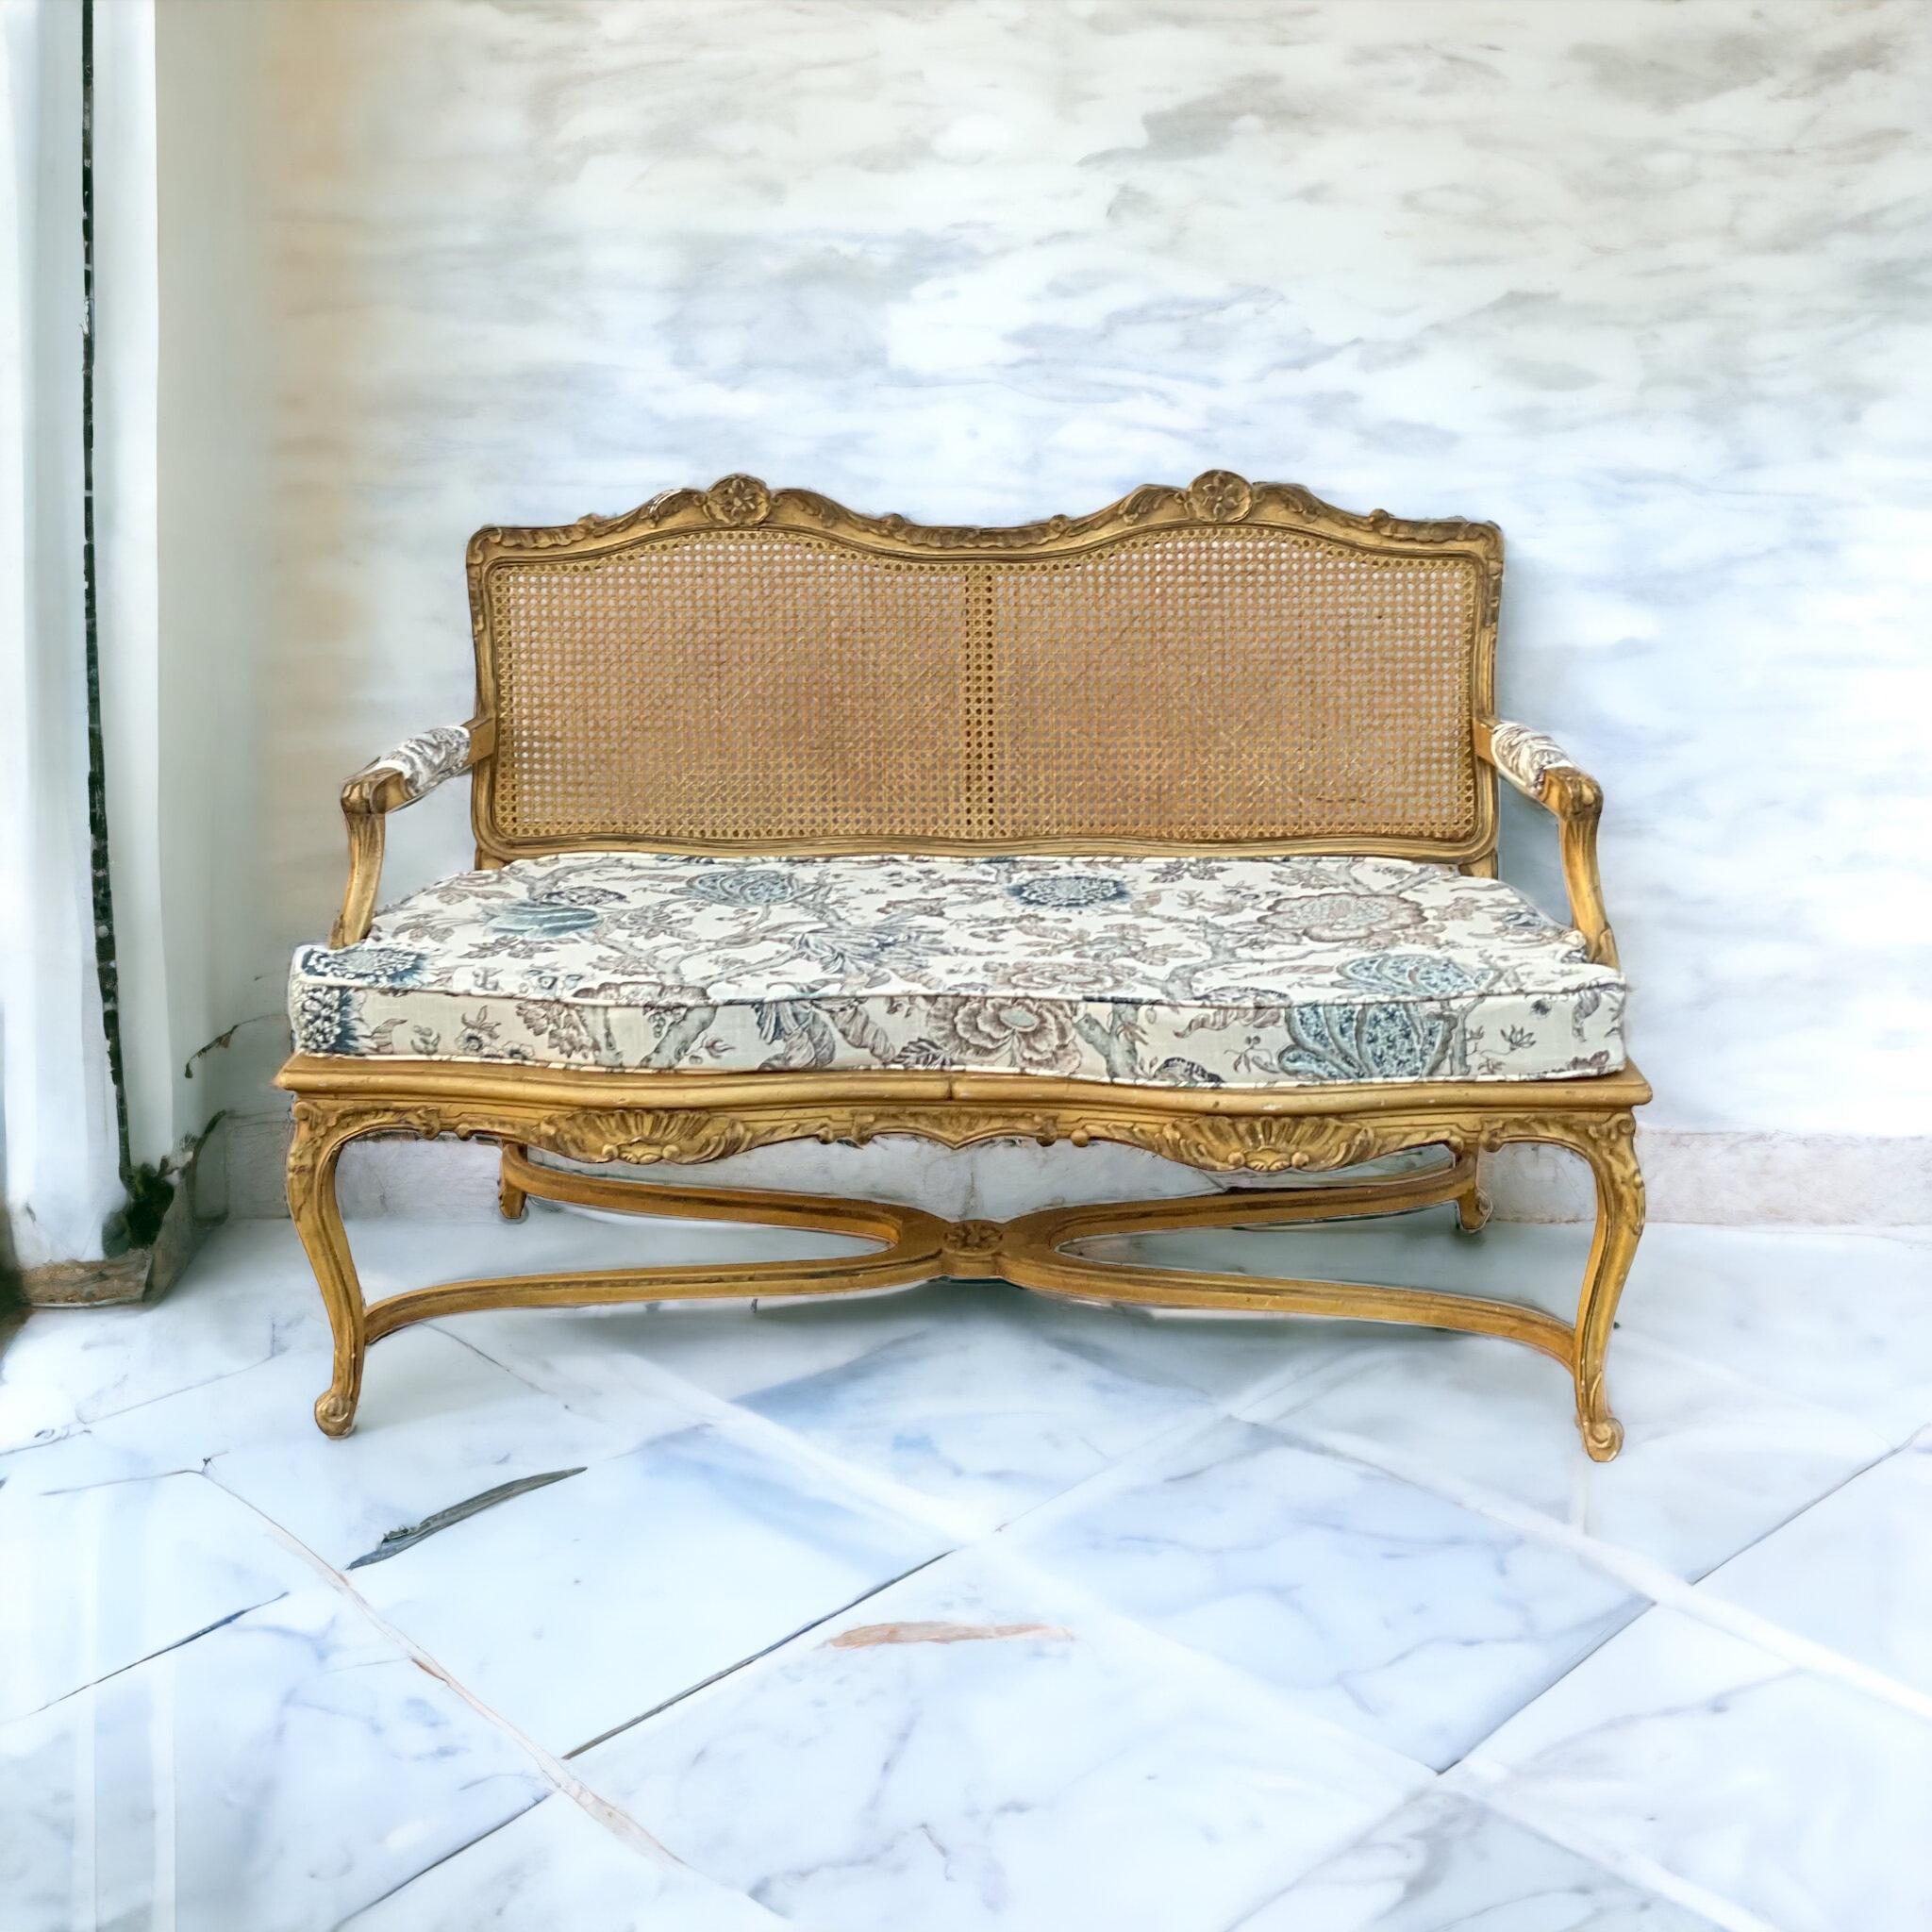 Dies ist ein französisches Sofa im Louis-XV-Stil aus der Mitte des Jahrhunderts mit einer antiken elfenbeinfarbenen Oberfläche. Das Leinenkissen ist neu und mit neutralen Blumenmotiven versehen.